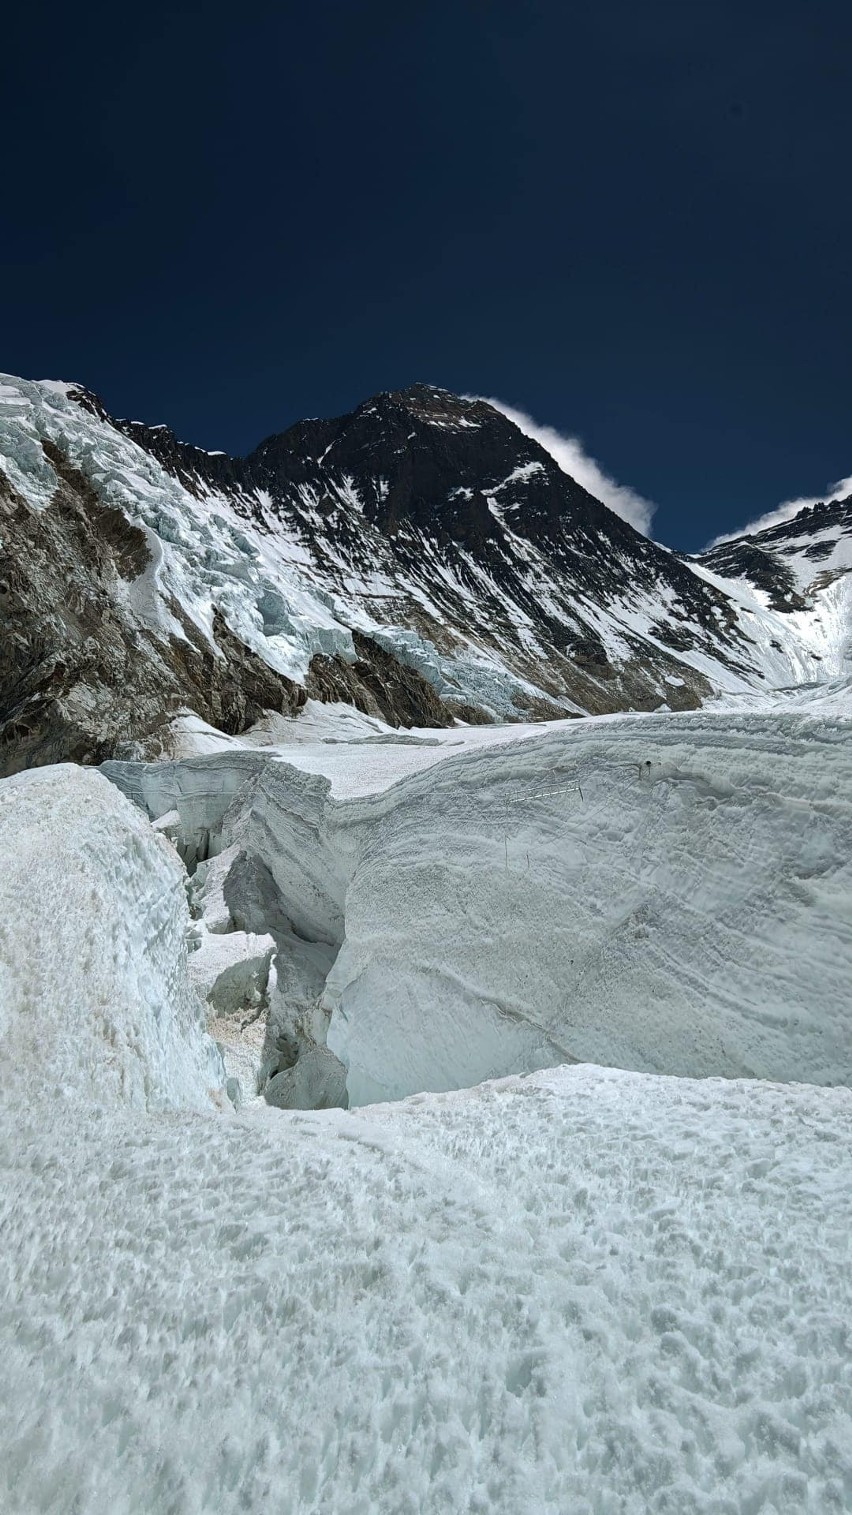 Bielszczanin Piotr Krzyżowski właśnie zdobył Mount Everest i Lhotse! Wspinał się samotnie i bez użycia tlenu z butli